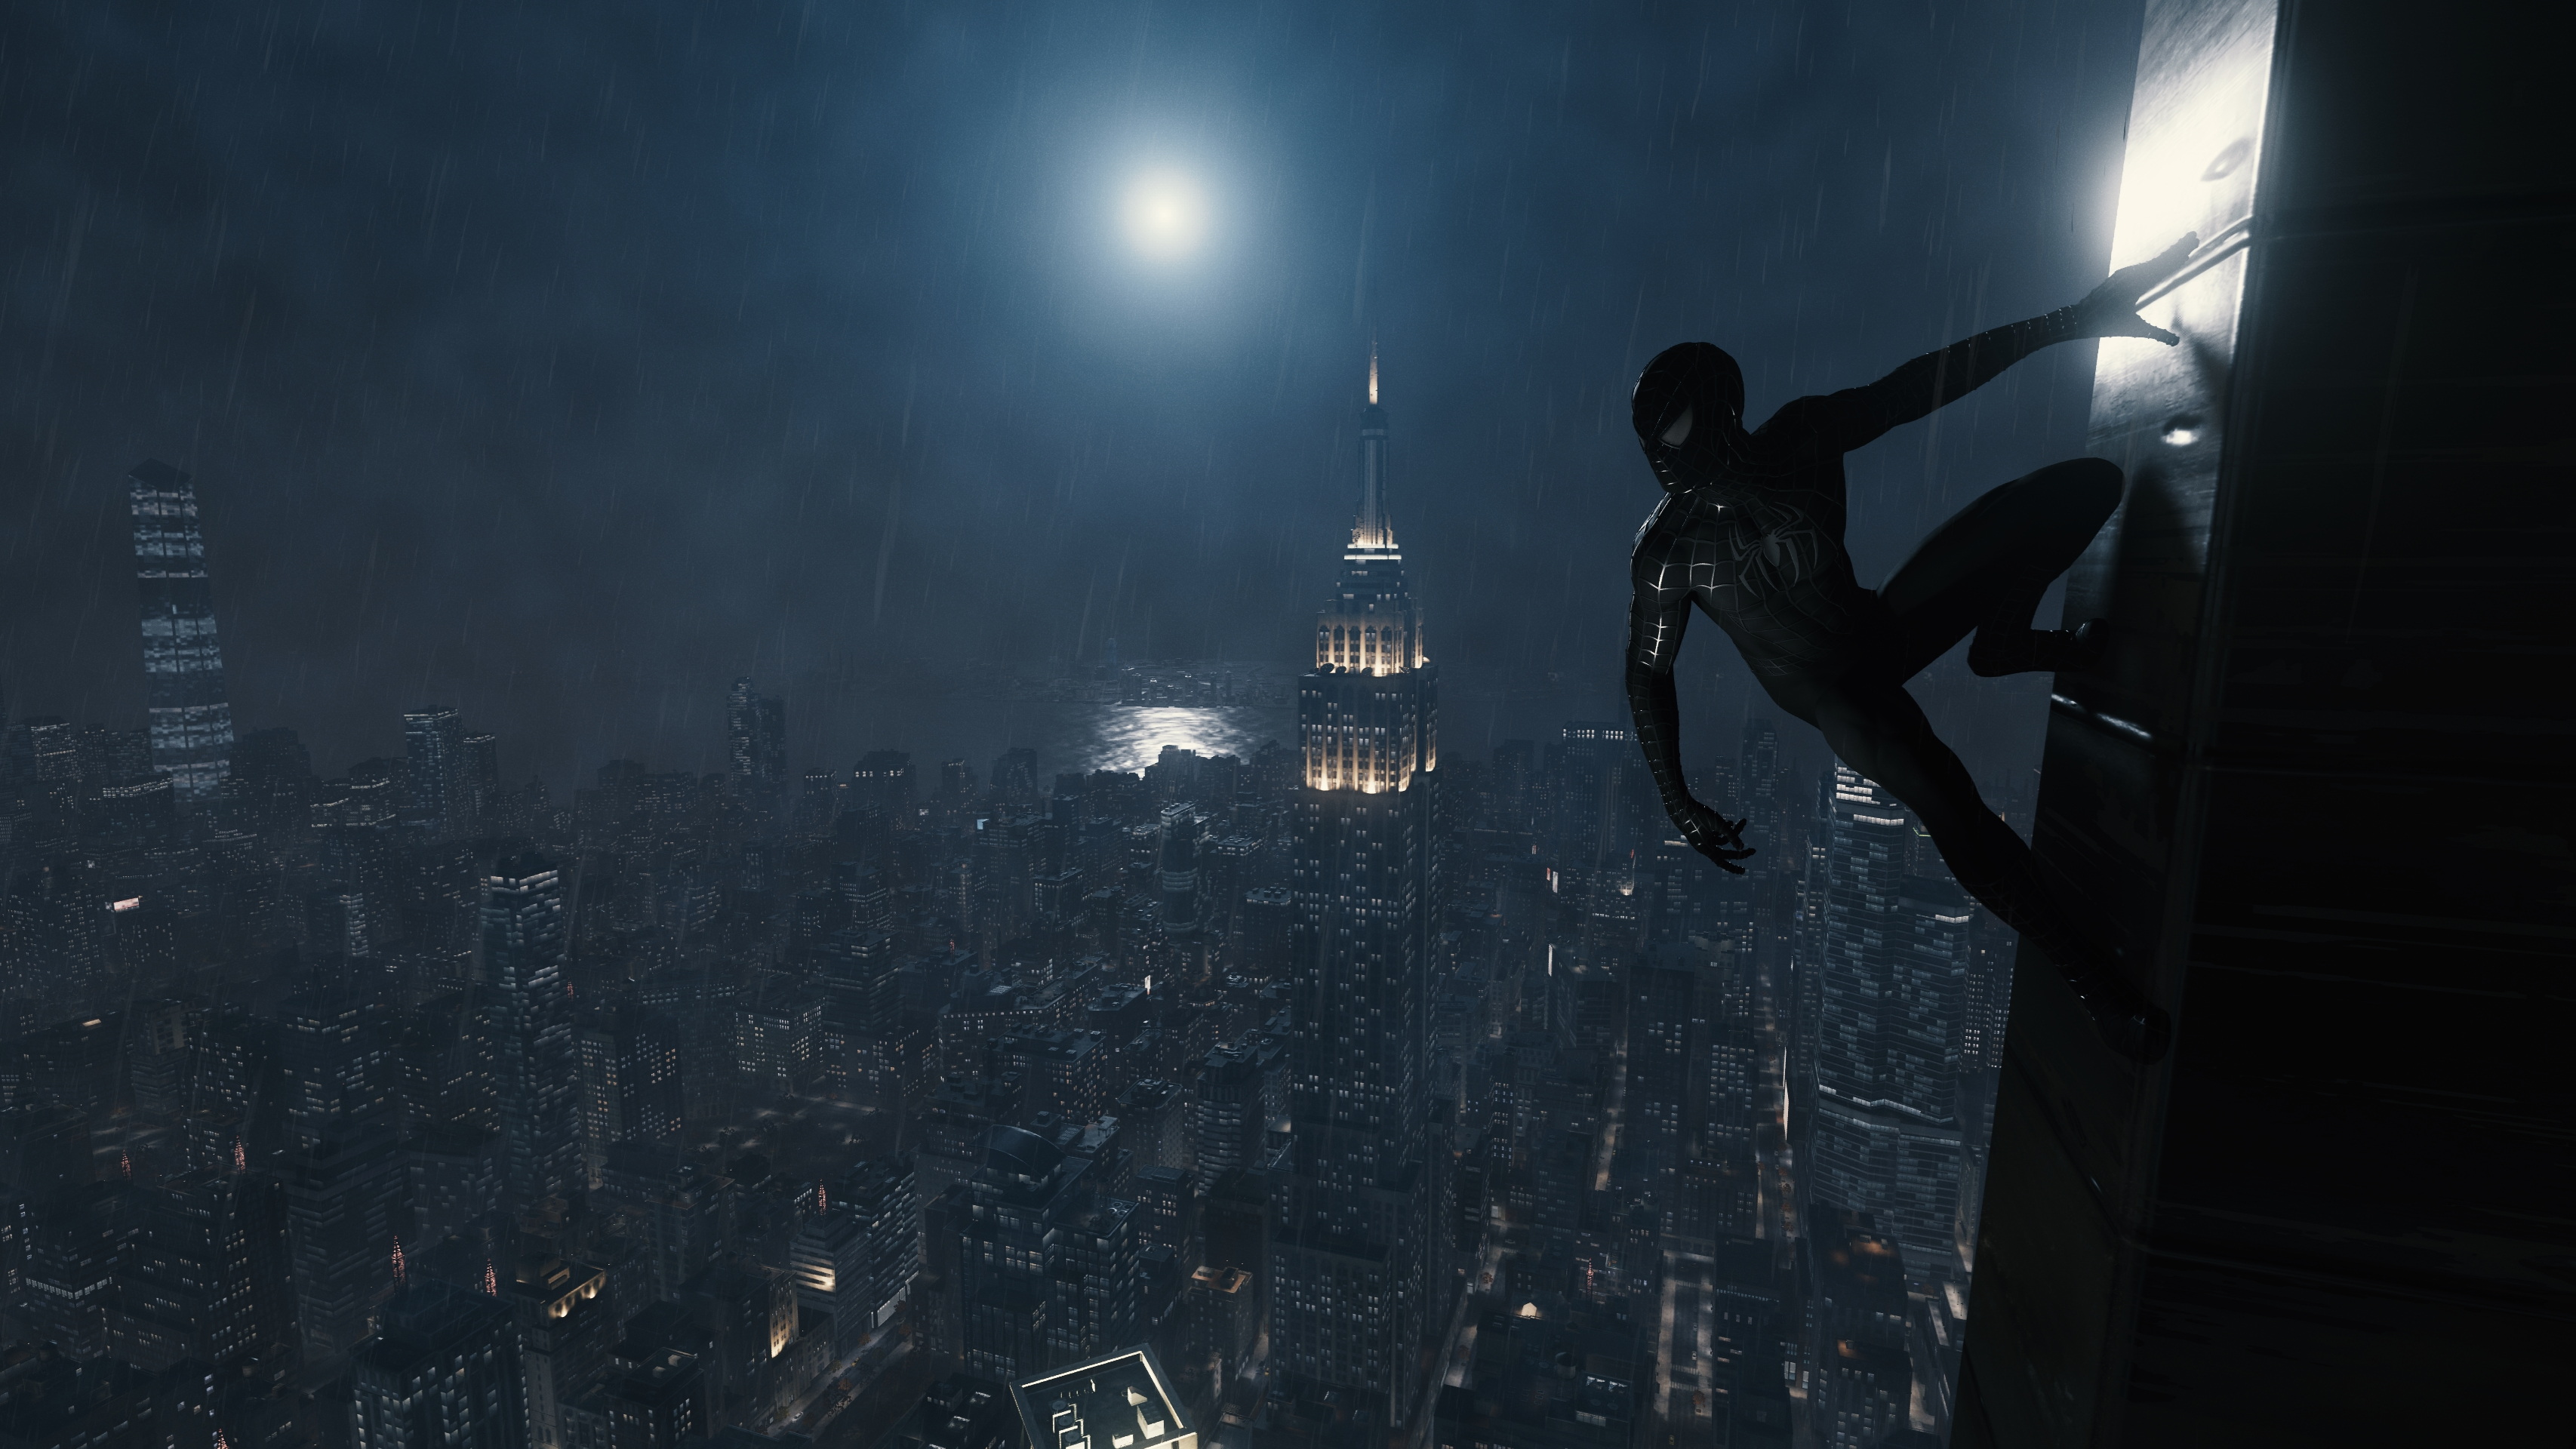 Spider Man Spider Man Remastered Video Games New York City Night Insomniac Games Superhero 3413x1920